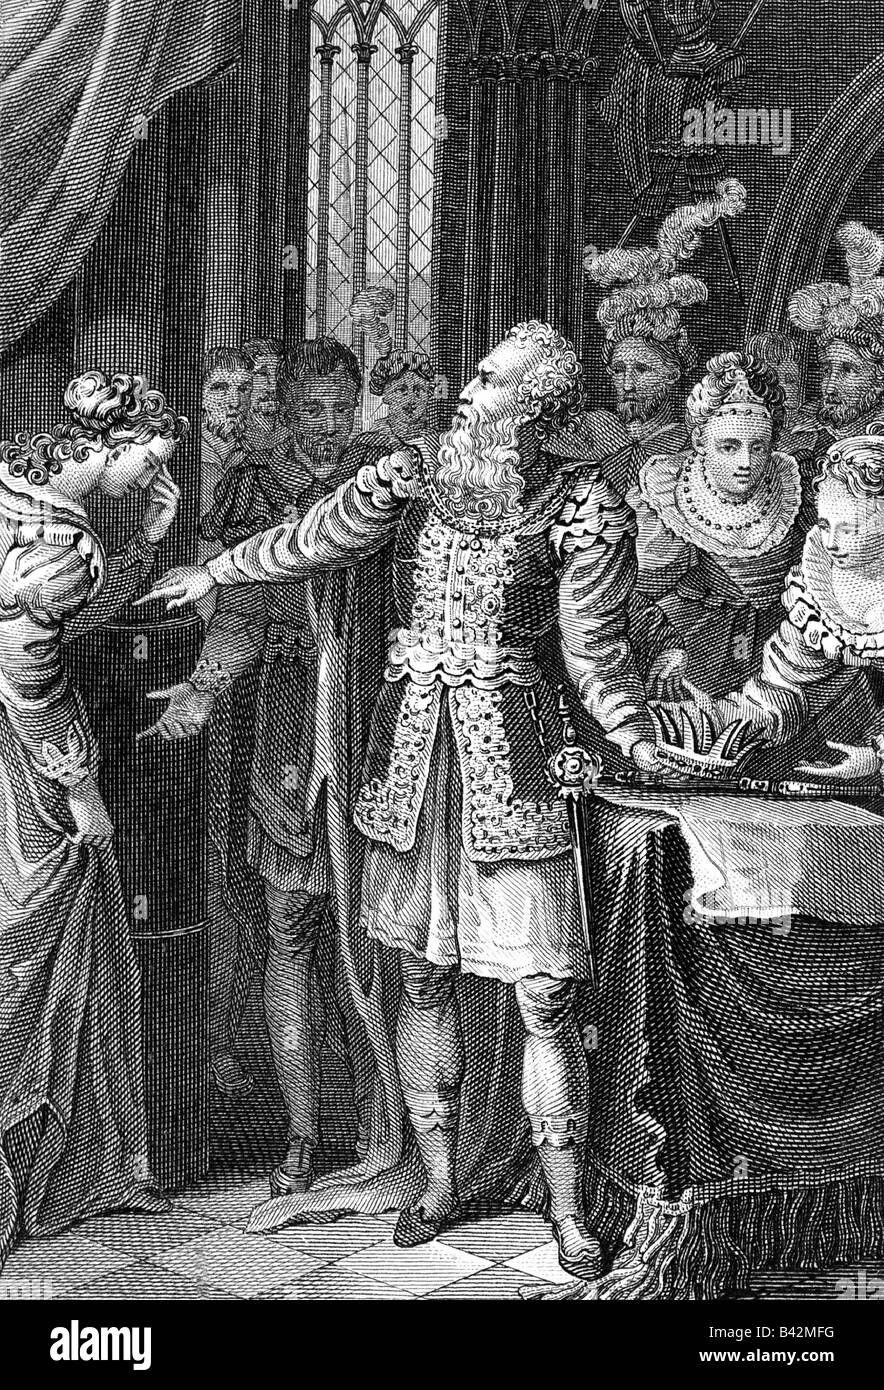 Shakespeare, William, 23.4.1564 - 23.4.1616, Inglese autore / scrittore, opere, giocare a 'Re Lear', 1° sct, prima scena, incisione su rame, XVIII secolo , artista del diritto d'autore non deve essere cancellata Foto Stock